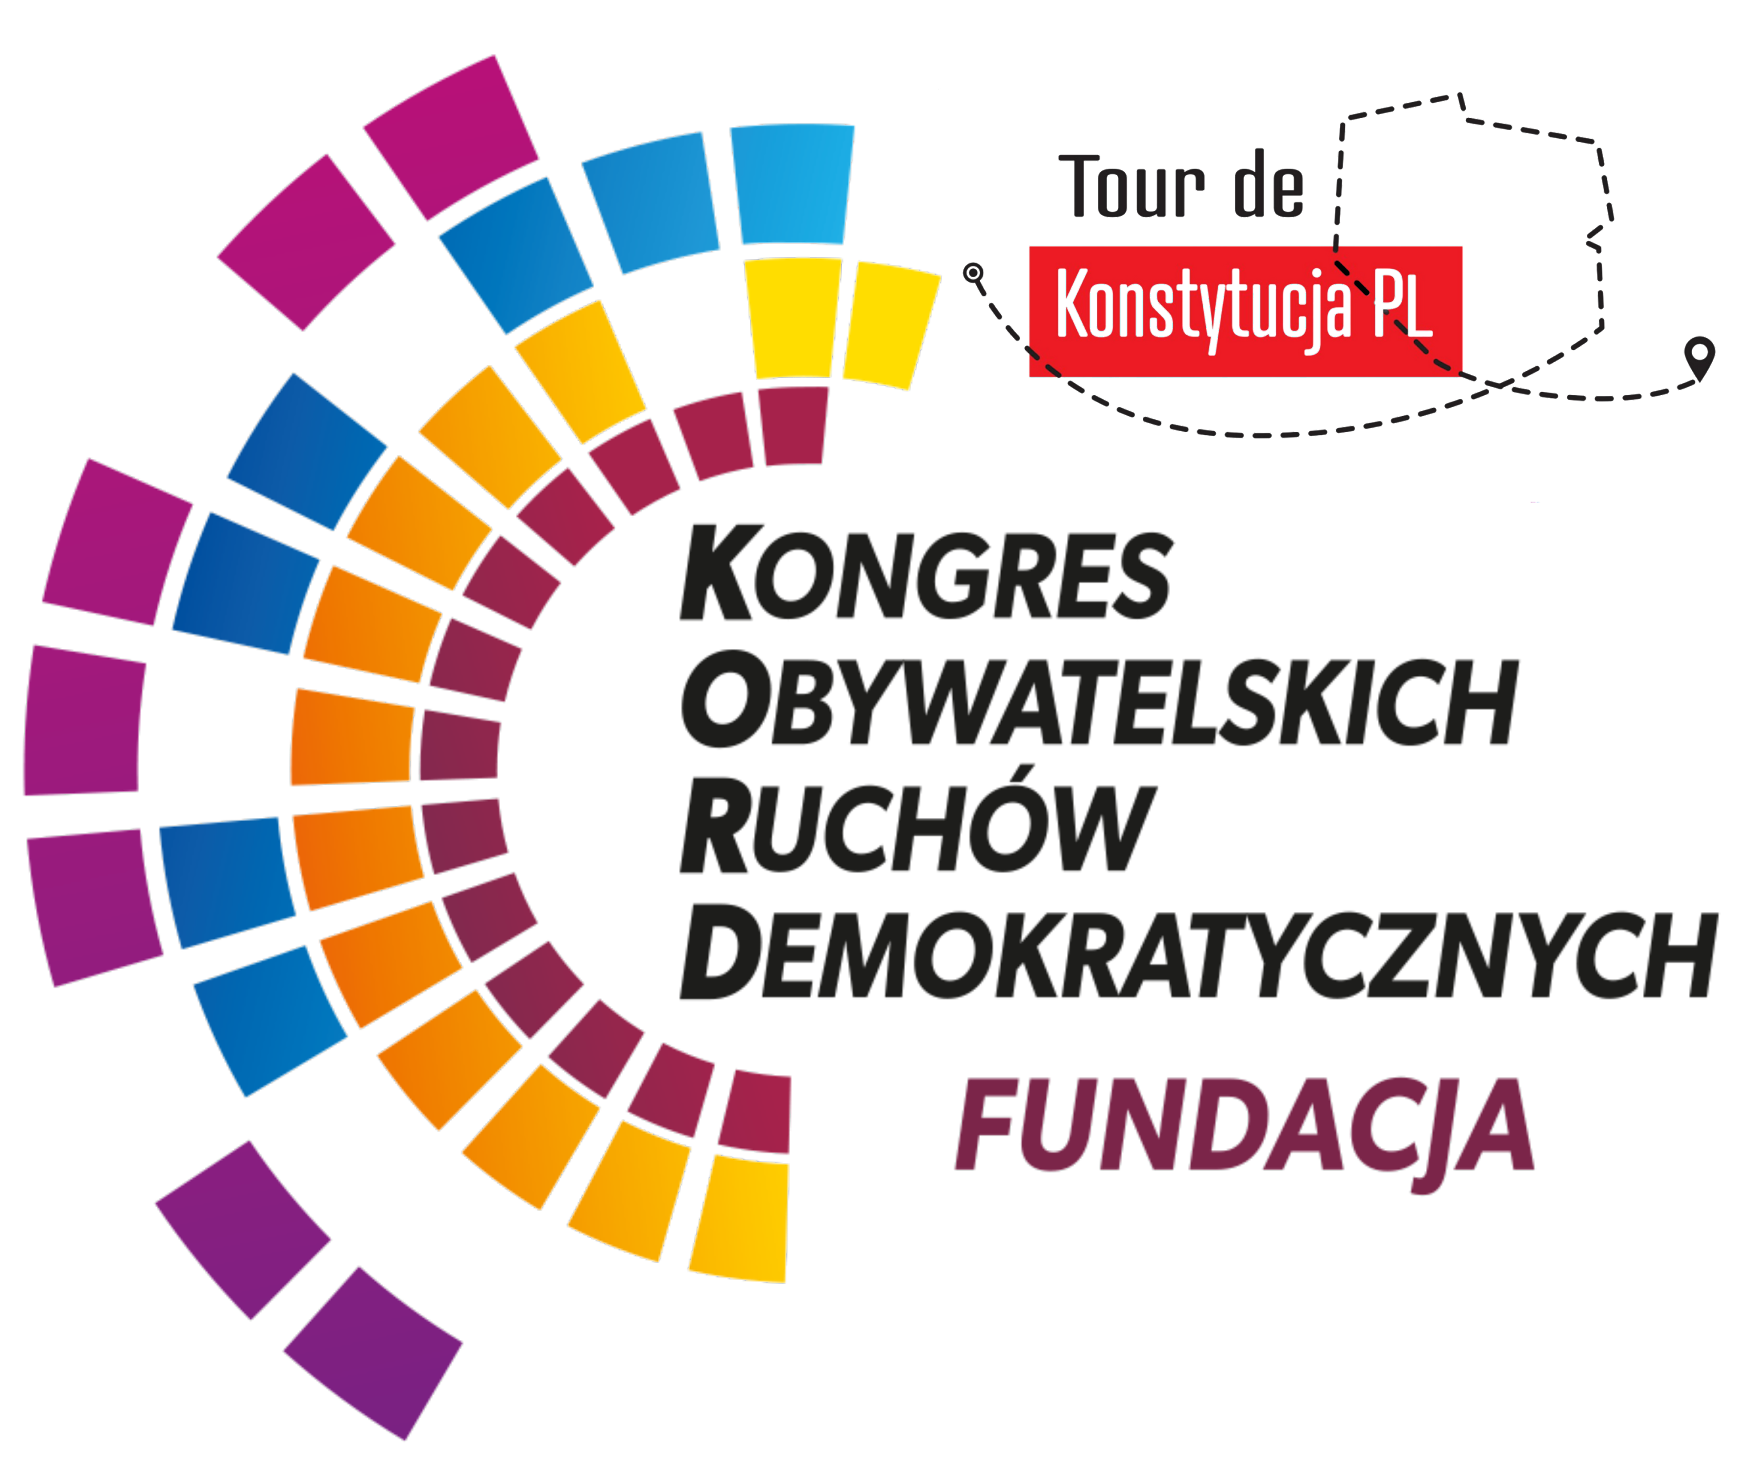 Fundacja Kongres Obywatelskich Ruchów Demokratycznych – Tour de Konstytucja